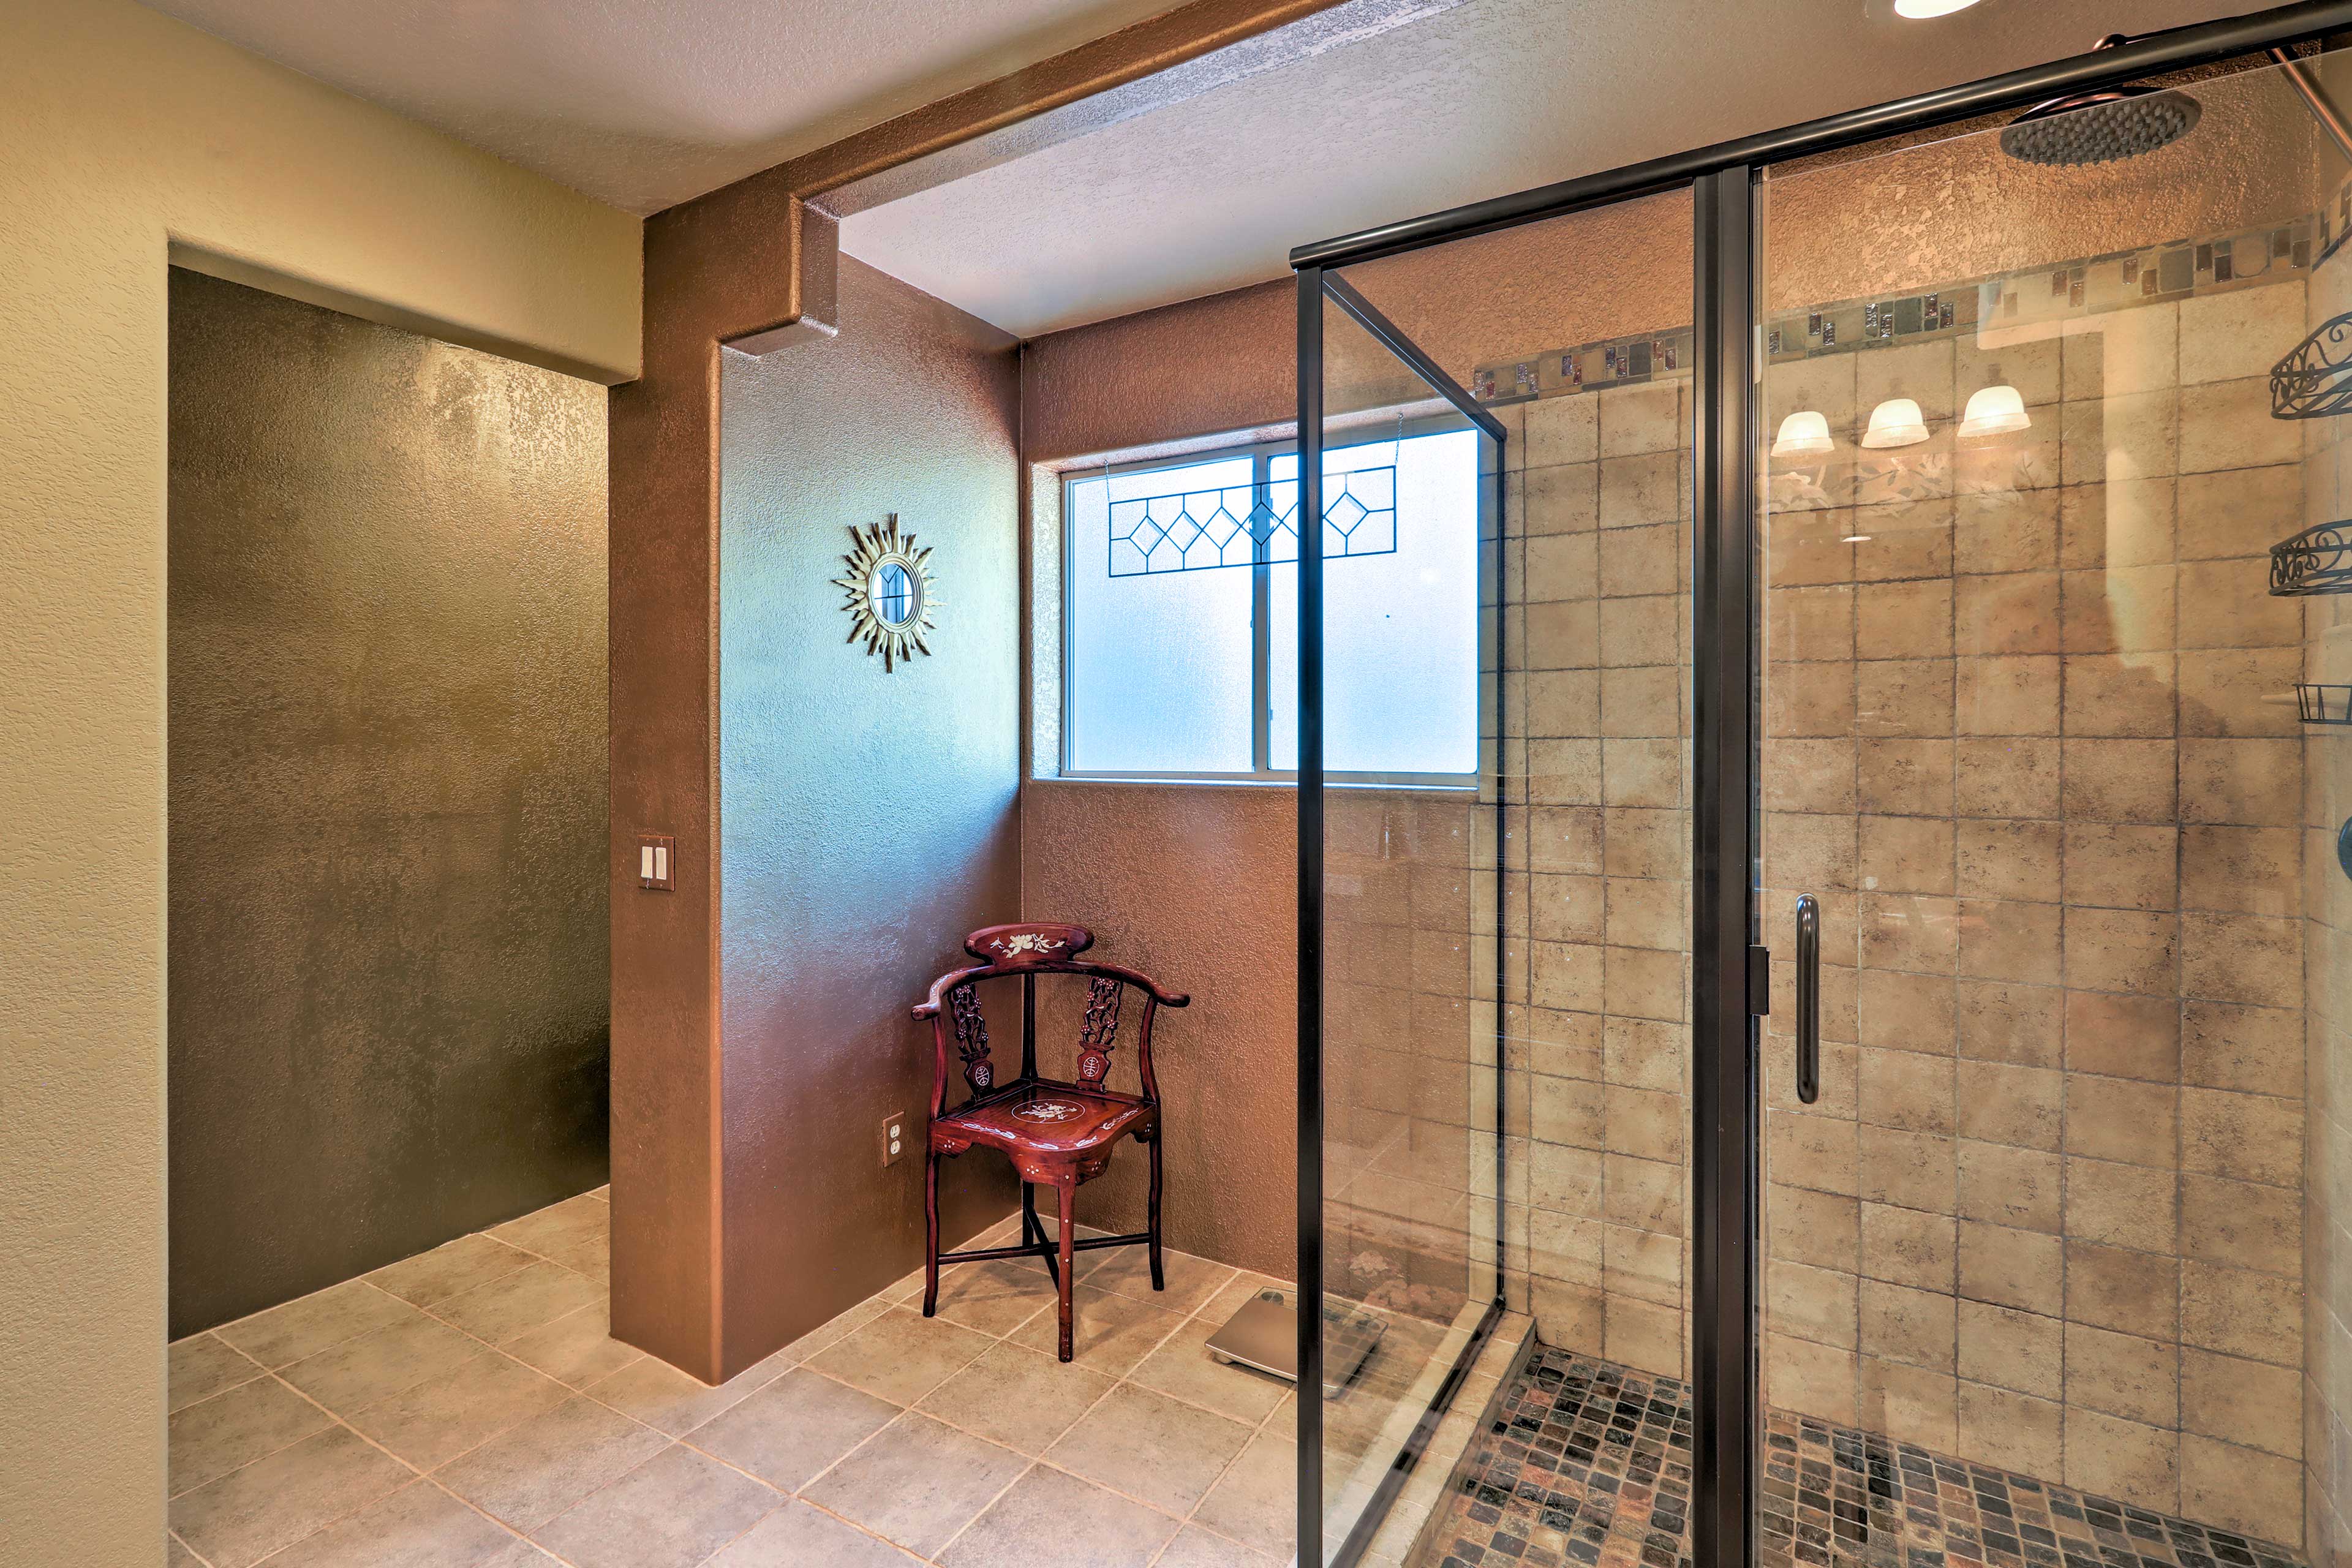 Take advantage of the en-suite bathroom!